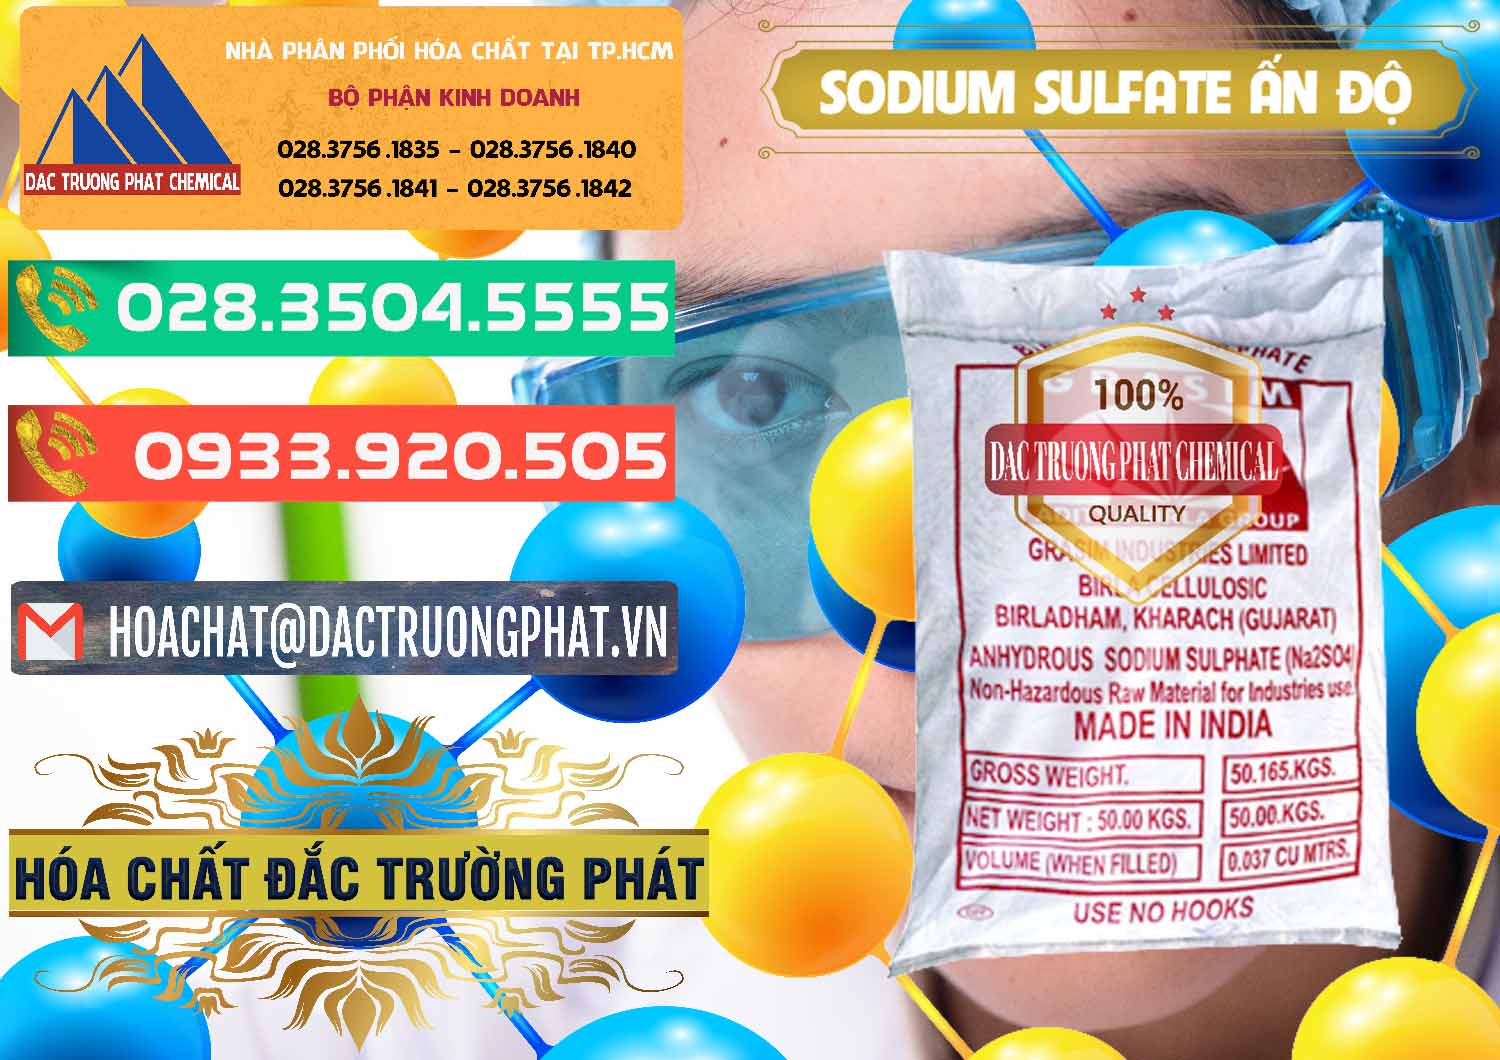 Cty chuyên bán & phân phối Sodium Sulphate - Muối Sunfat Na2SO4 Aditya Birla Grasim Ấn Độ India - 0462 - Công ty cung cấp ( bán ) hóa chất tại TP.HCM - congtyhoachat.com.vn